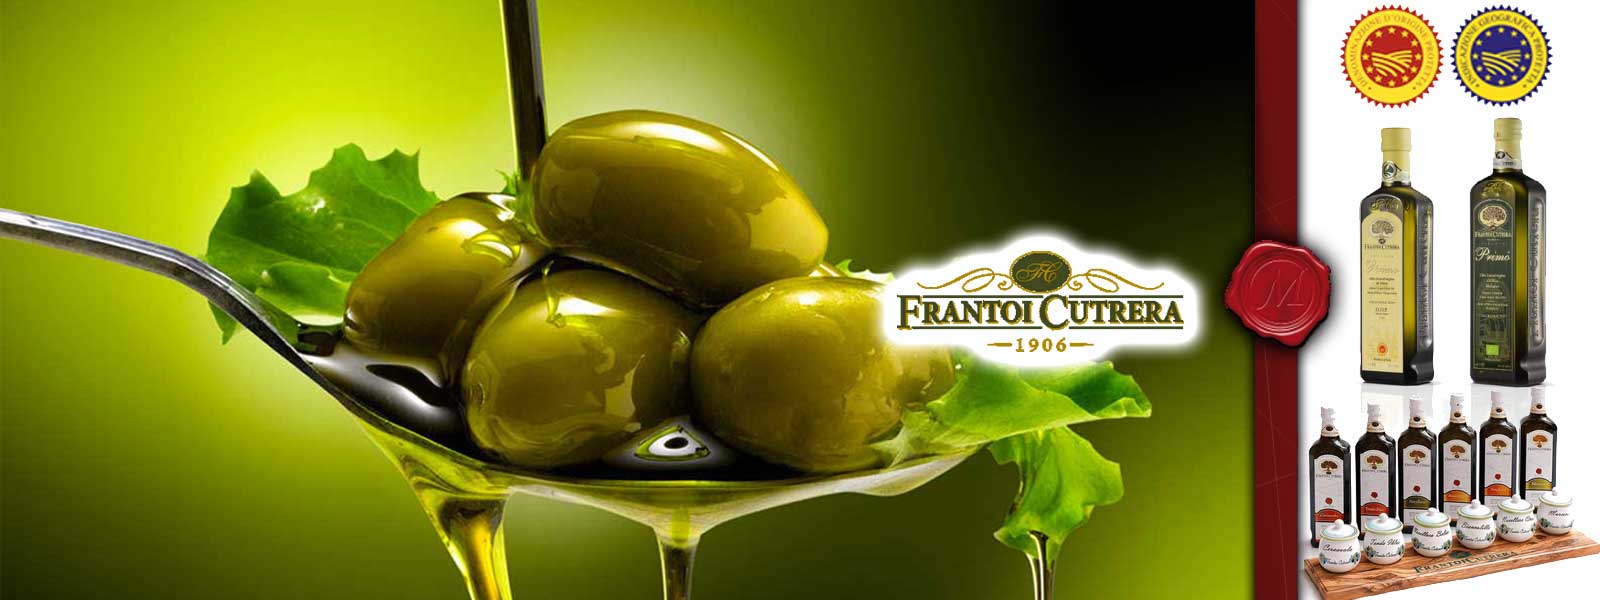 Olivenöl von Frantoi Cutrera 